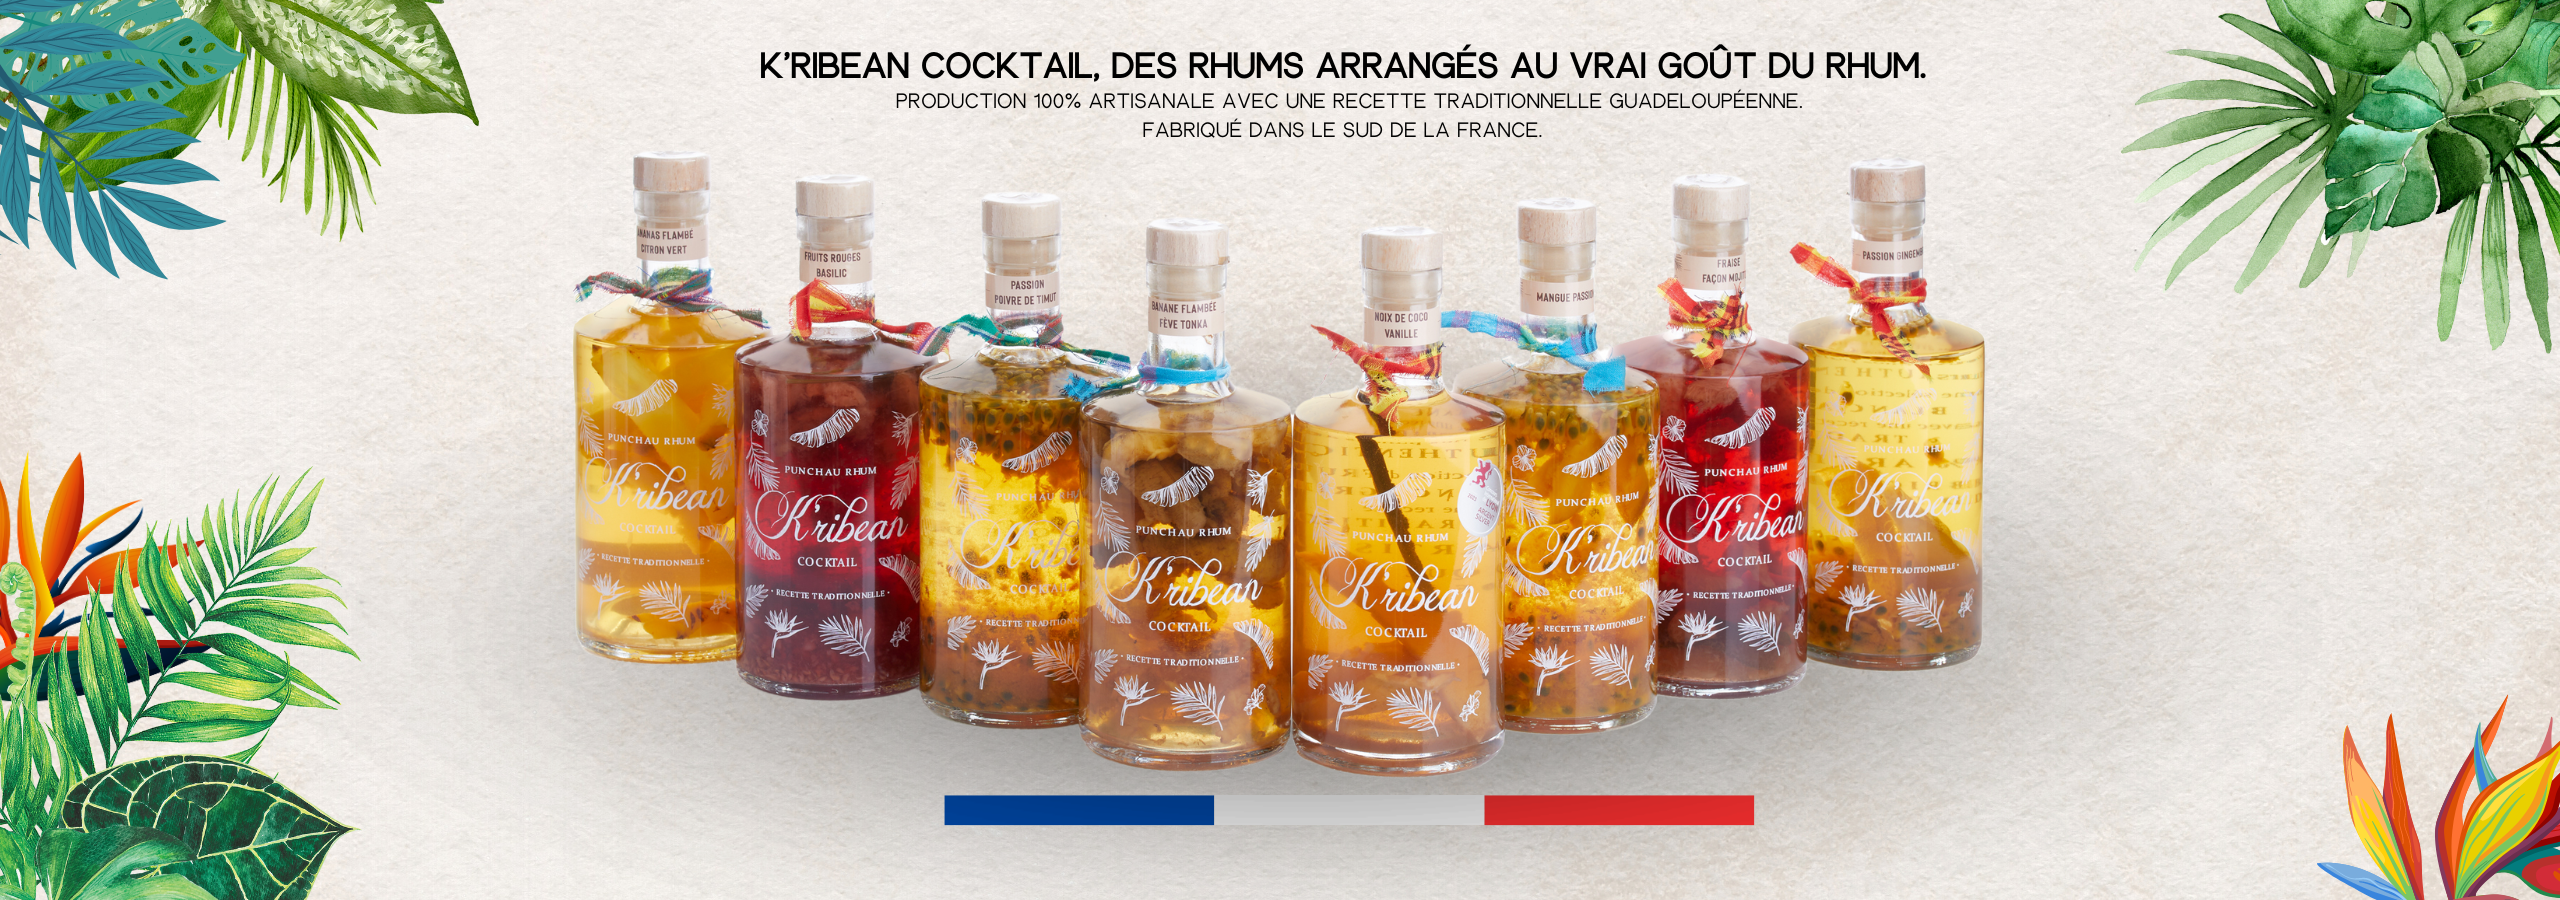 Gamme de rhums arrangés K'ribean Cocktail, produits artisanalement dans le sud de la france depuis 2018.